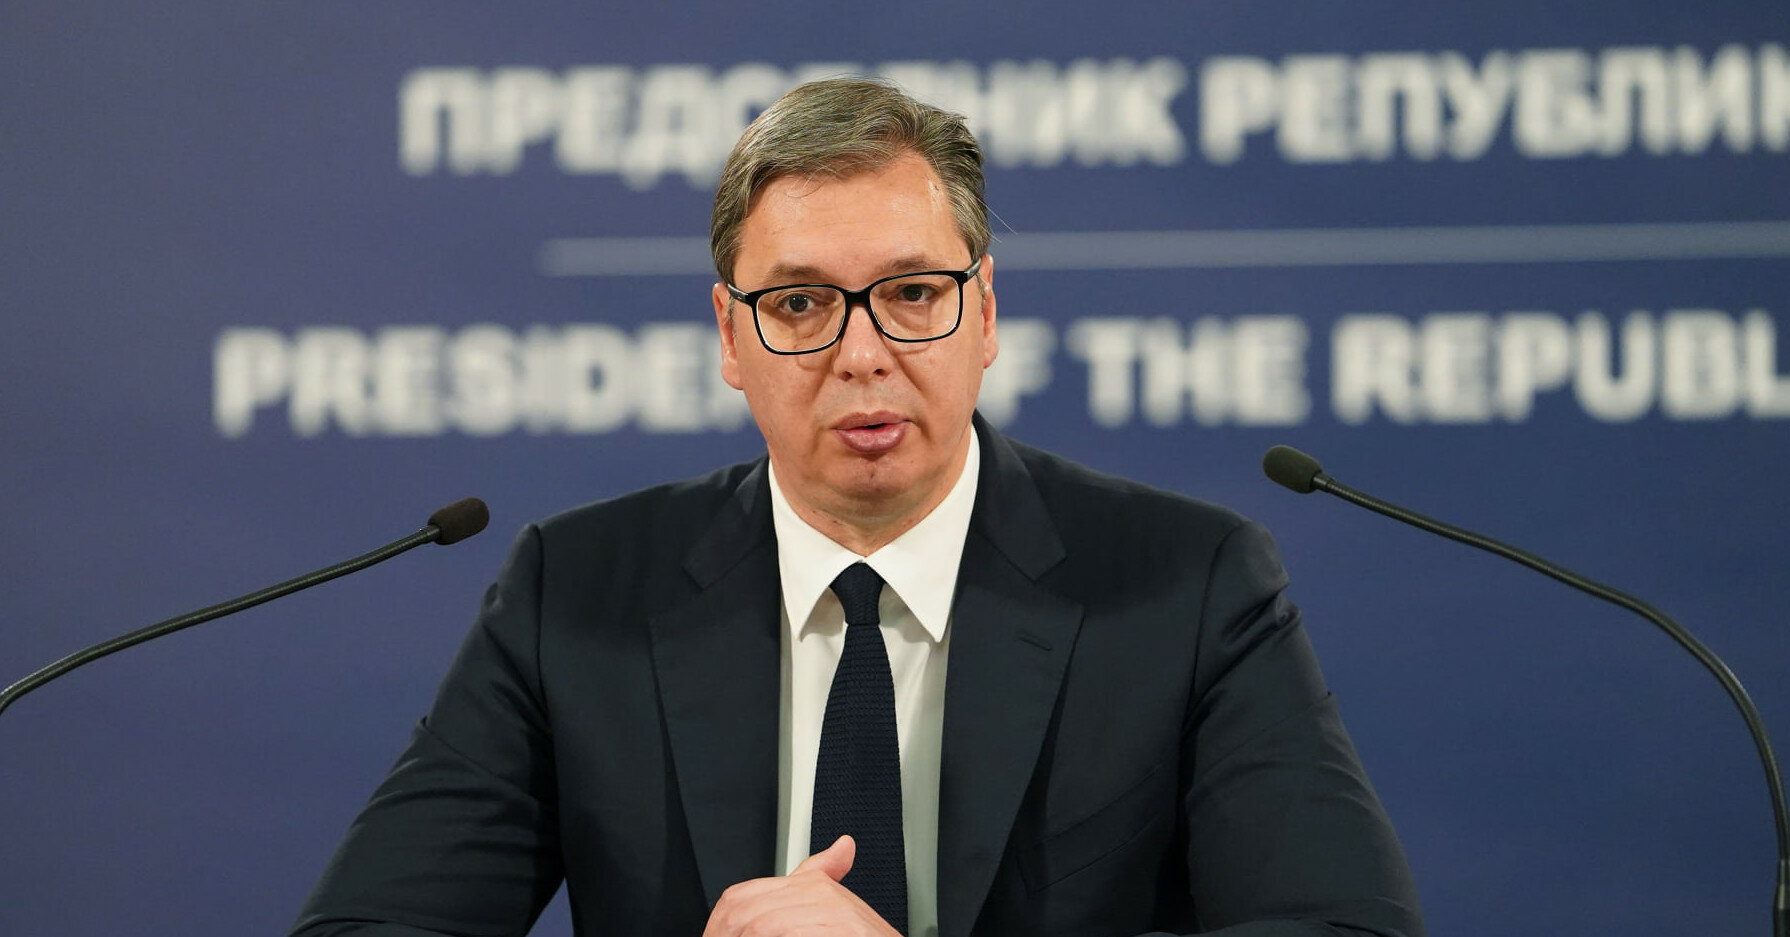 Президента Сербии проверят на детекторе лжи